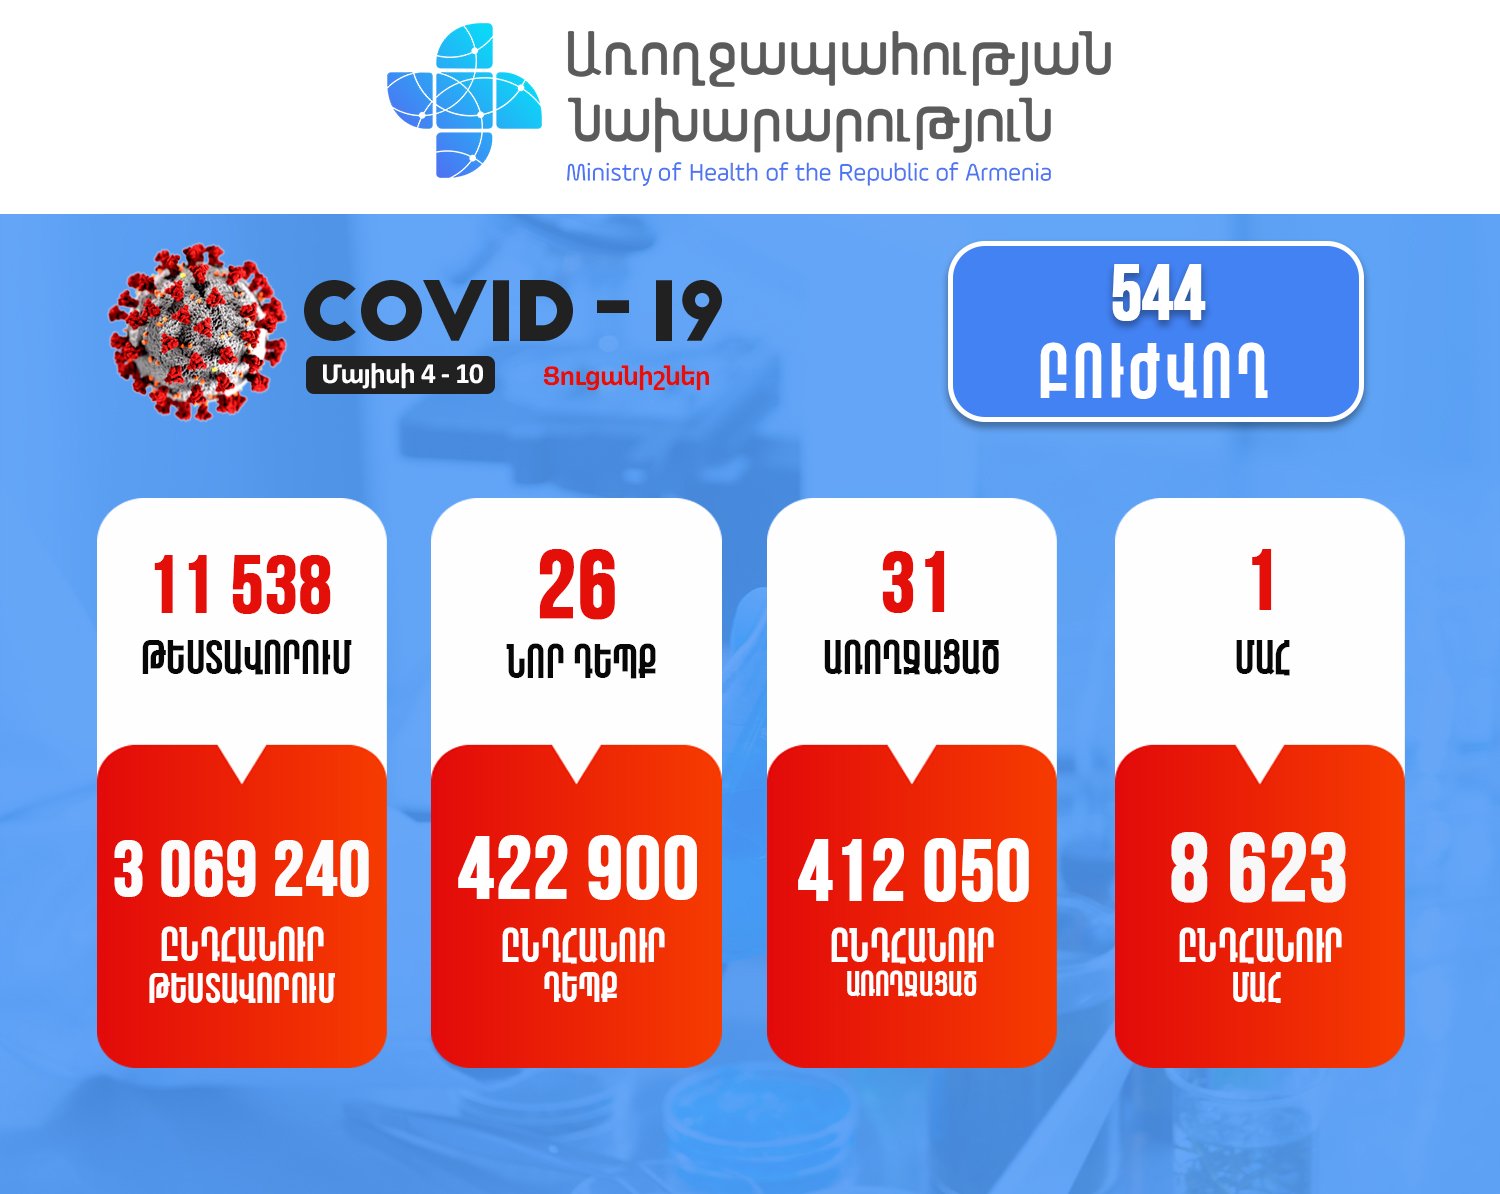 Հայաստանում վերջին մեկ շաբաթում հաստատվել է կորոնավիրուսի 26 դեպք. մահացել է 1 քաղաքացի